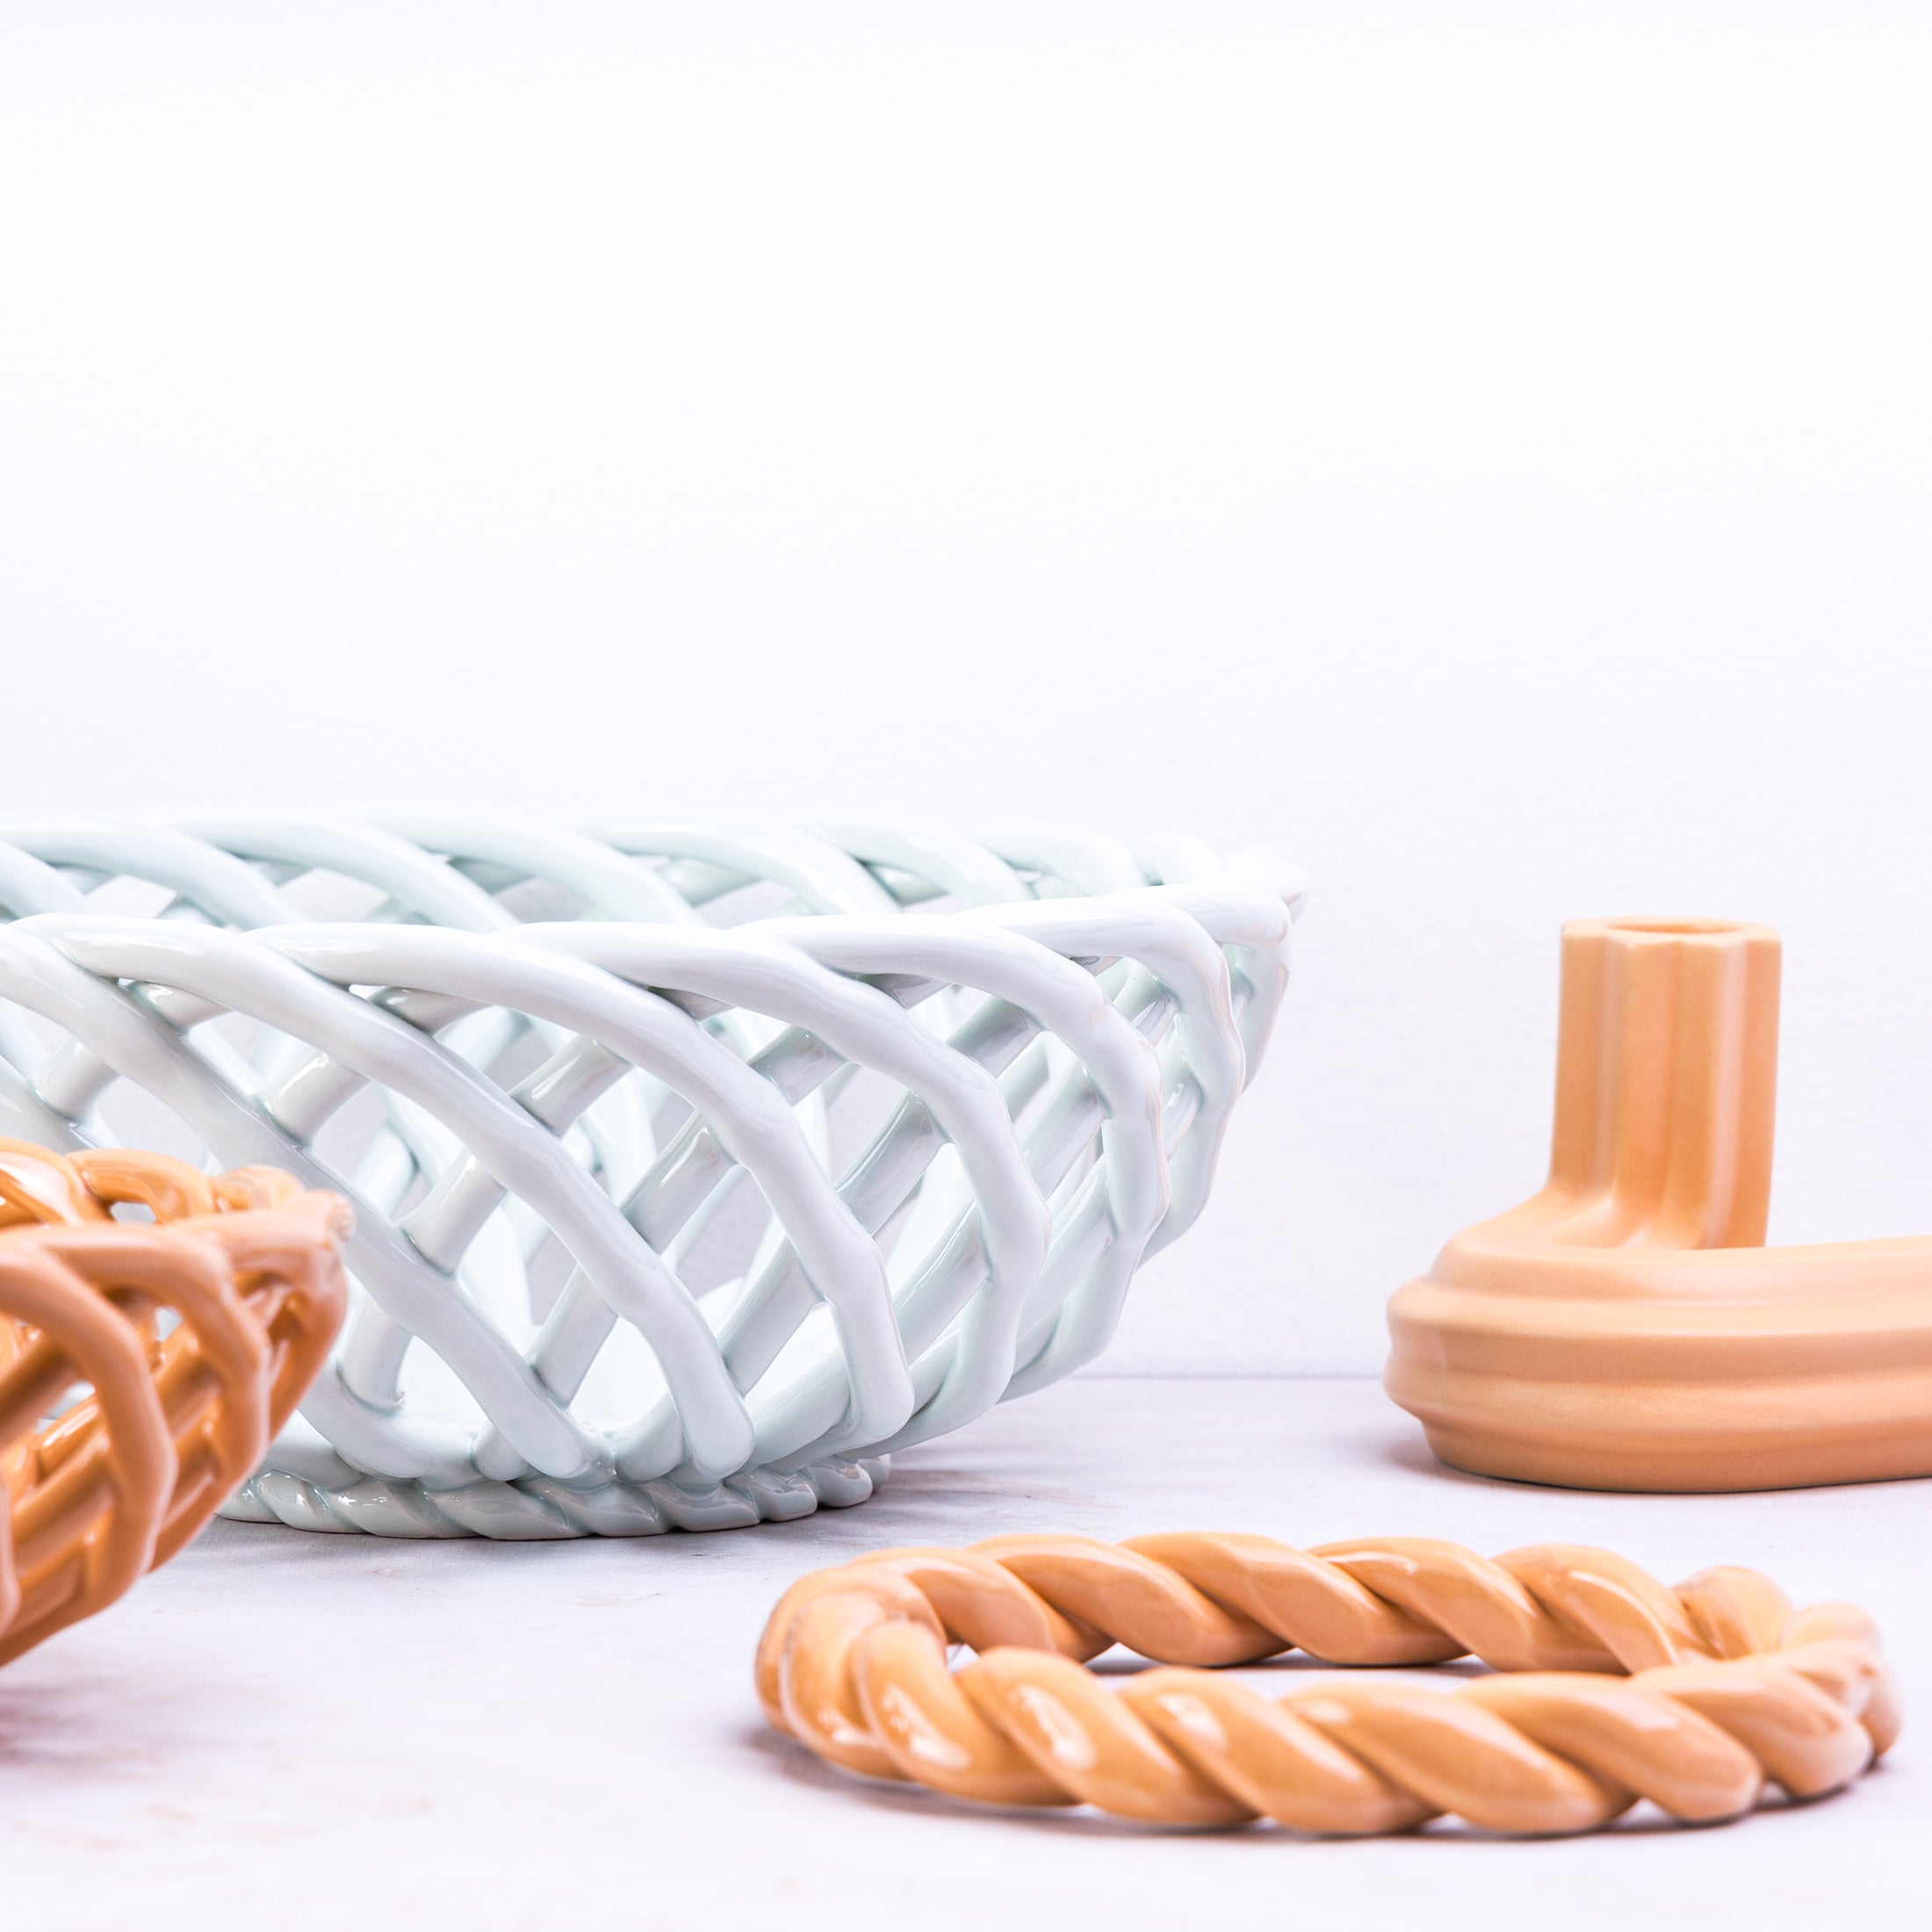 Herring & Bones - Concept Store Joyeux - Octaevo - Dessous de plat - Dessous de plat en céramique Sicilia